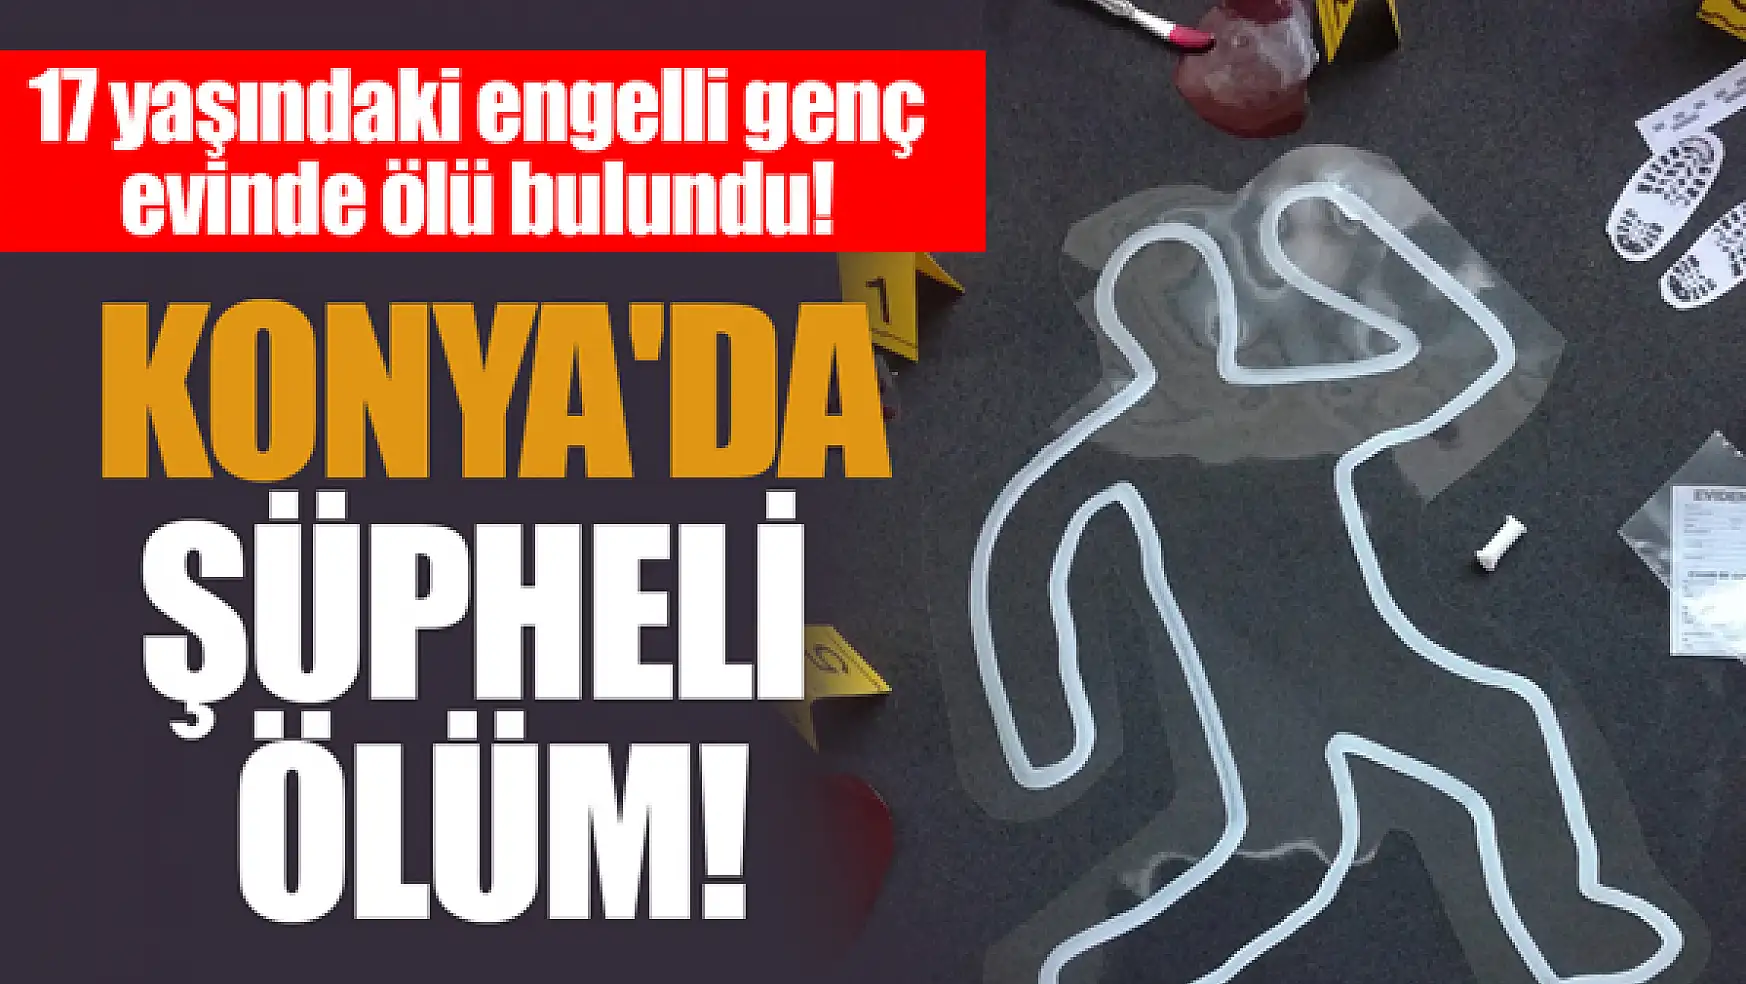 Konya'da şüpheli ölüm! 17 yaşındaki engelli genç evinde ölü bulundu